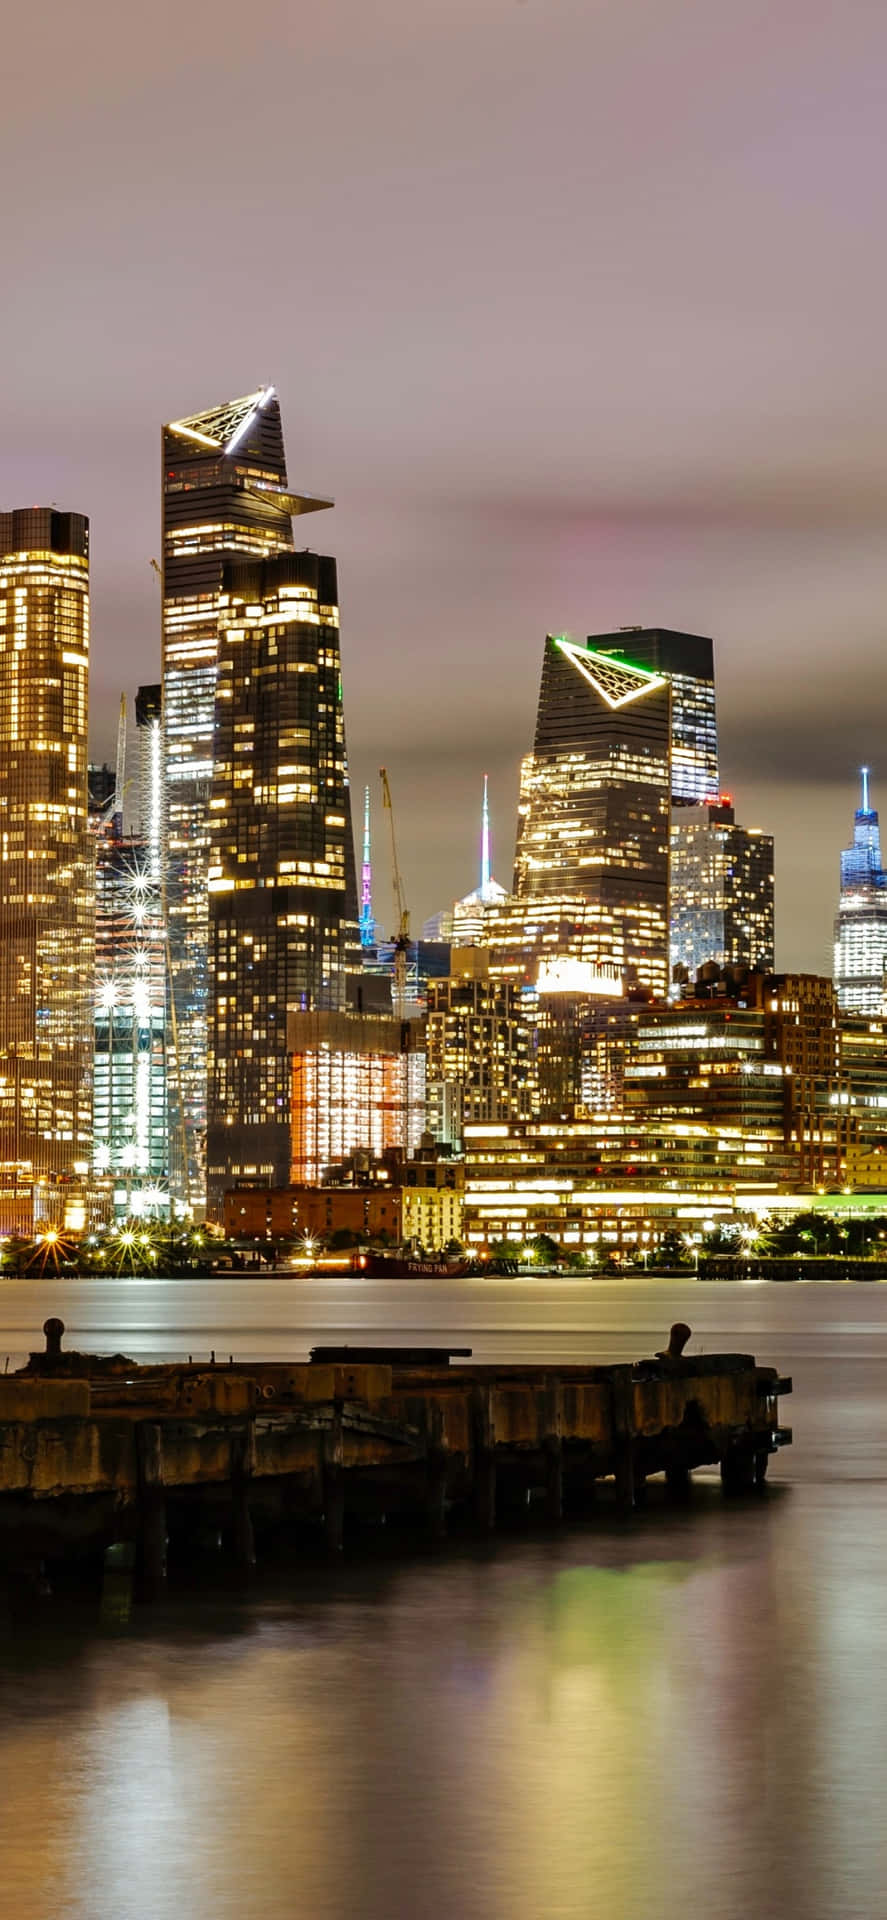 Laestatua De La Libertad Con Vistas Al Perfil Nocturno De La Ciudad De Nueva York.